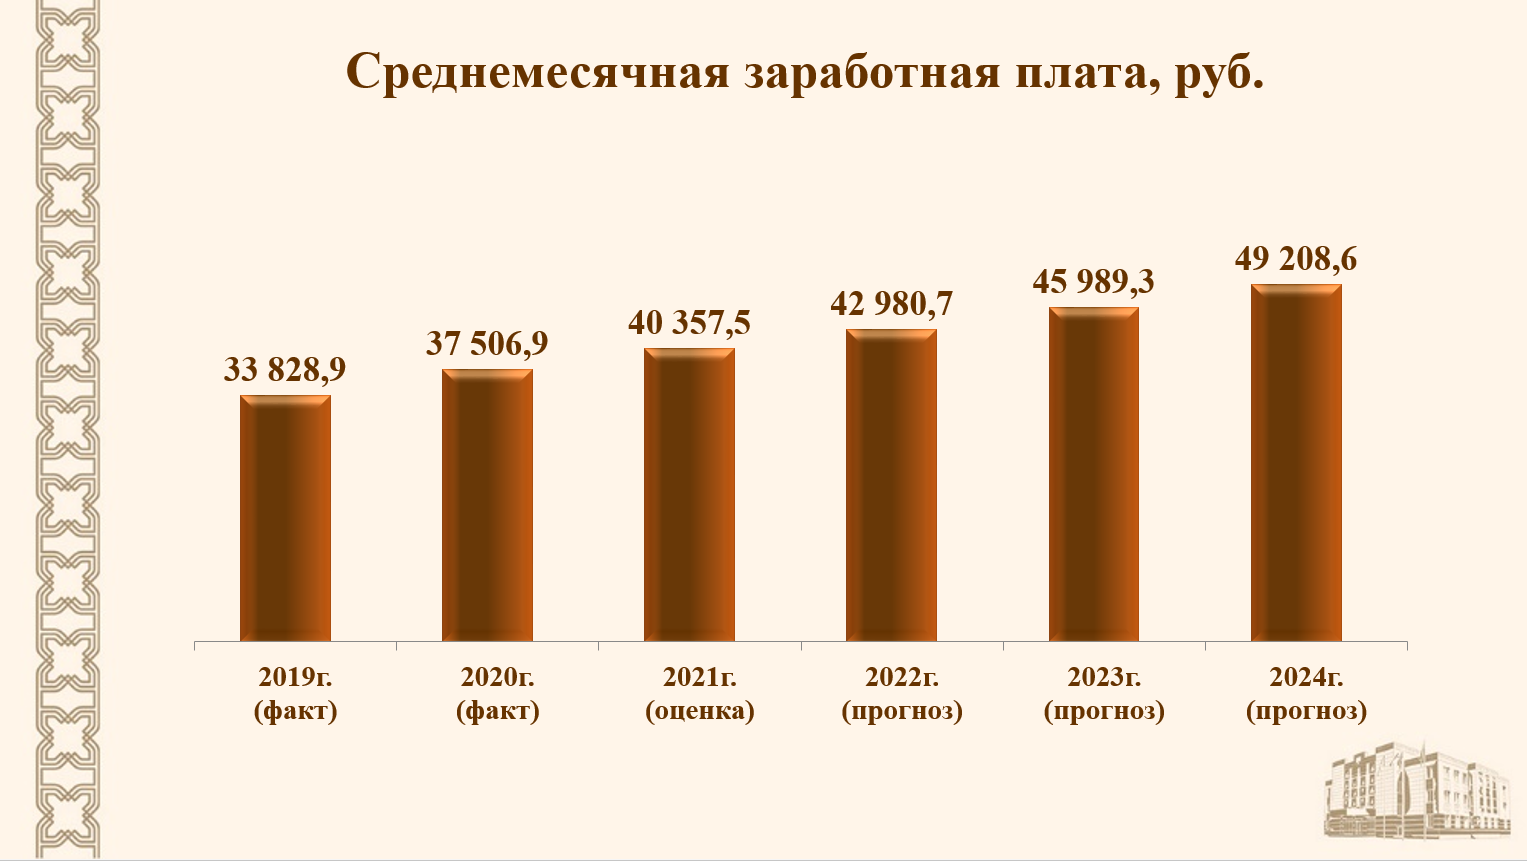 Повышение зарплаты в 2024 г. Заработная плата сокращение. Рост зарплаты. Татарстан уровень безработицы 2020 год. Снижение заработной платы 2008.